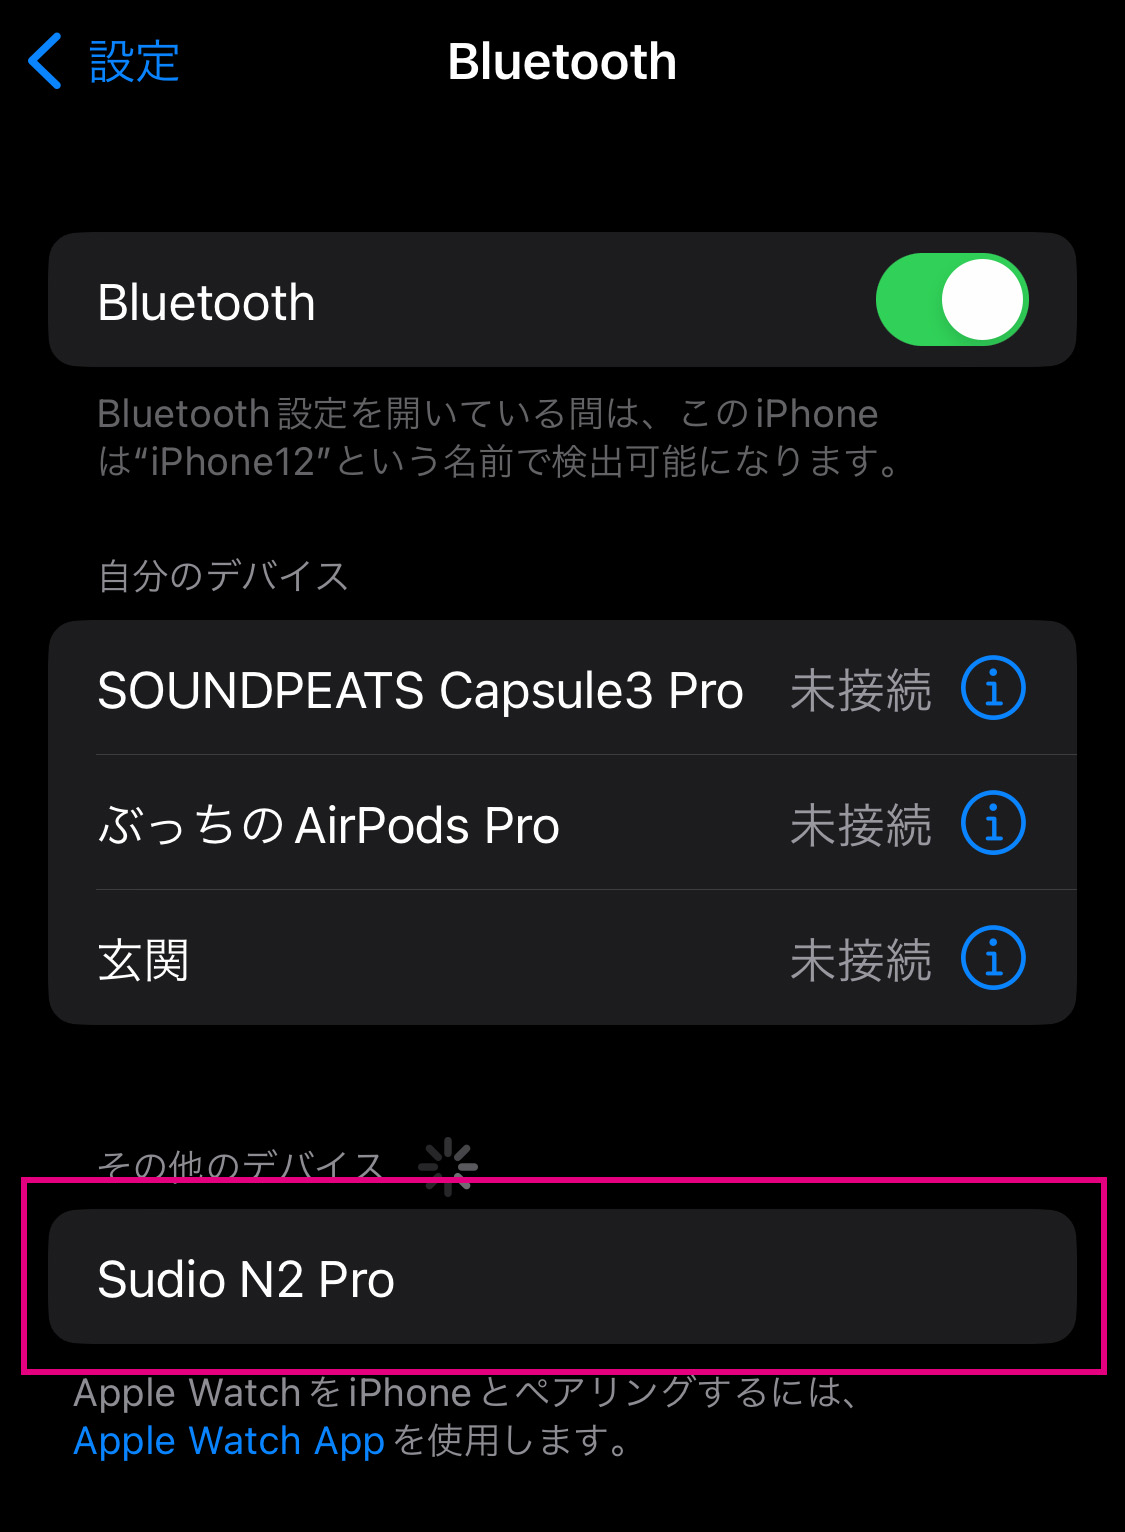 デバイスリストにあるSudio N2 Proを選択